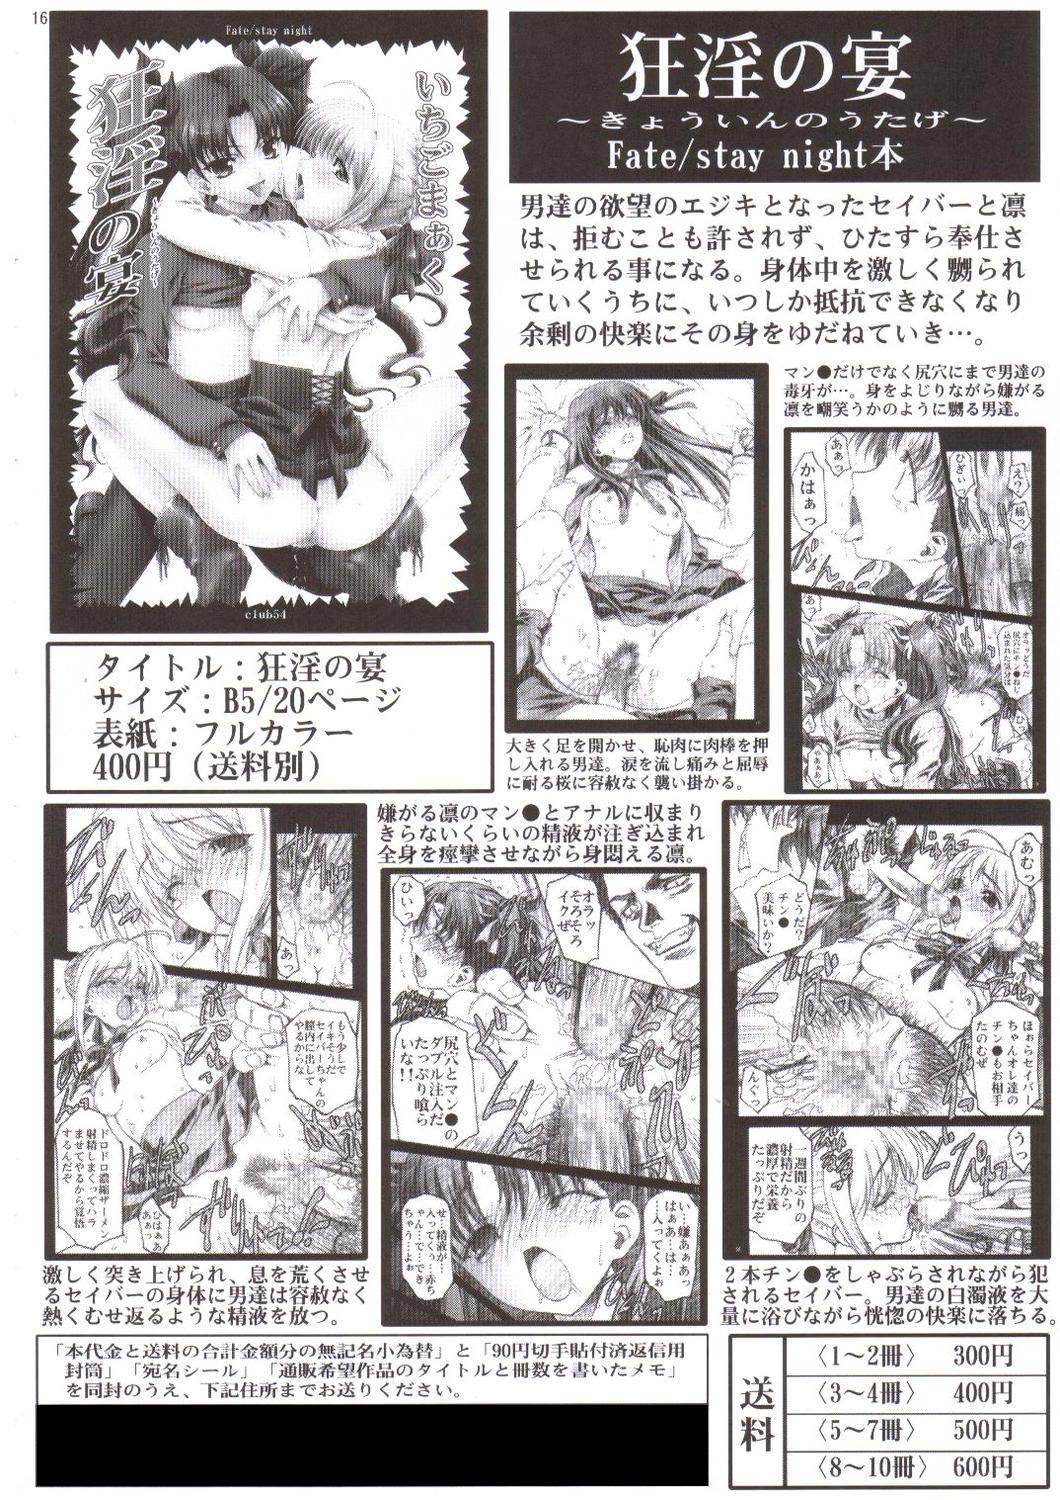 Fodendo Ryoujoku no Etsuraku no Rinkan - Fate stay night Asians - Page 15